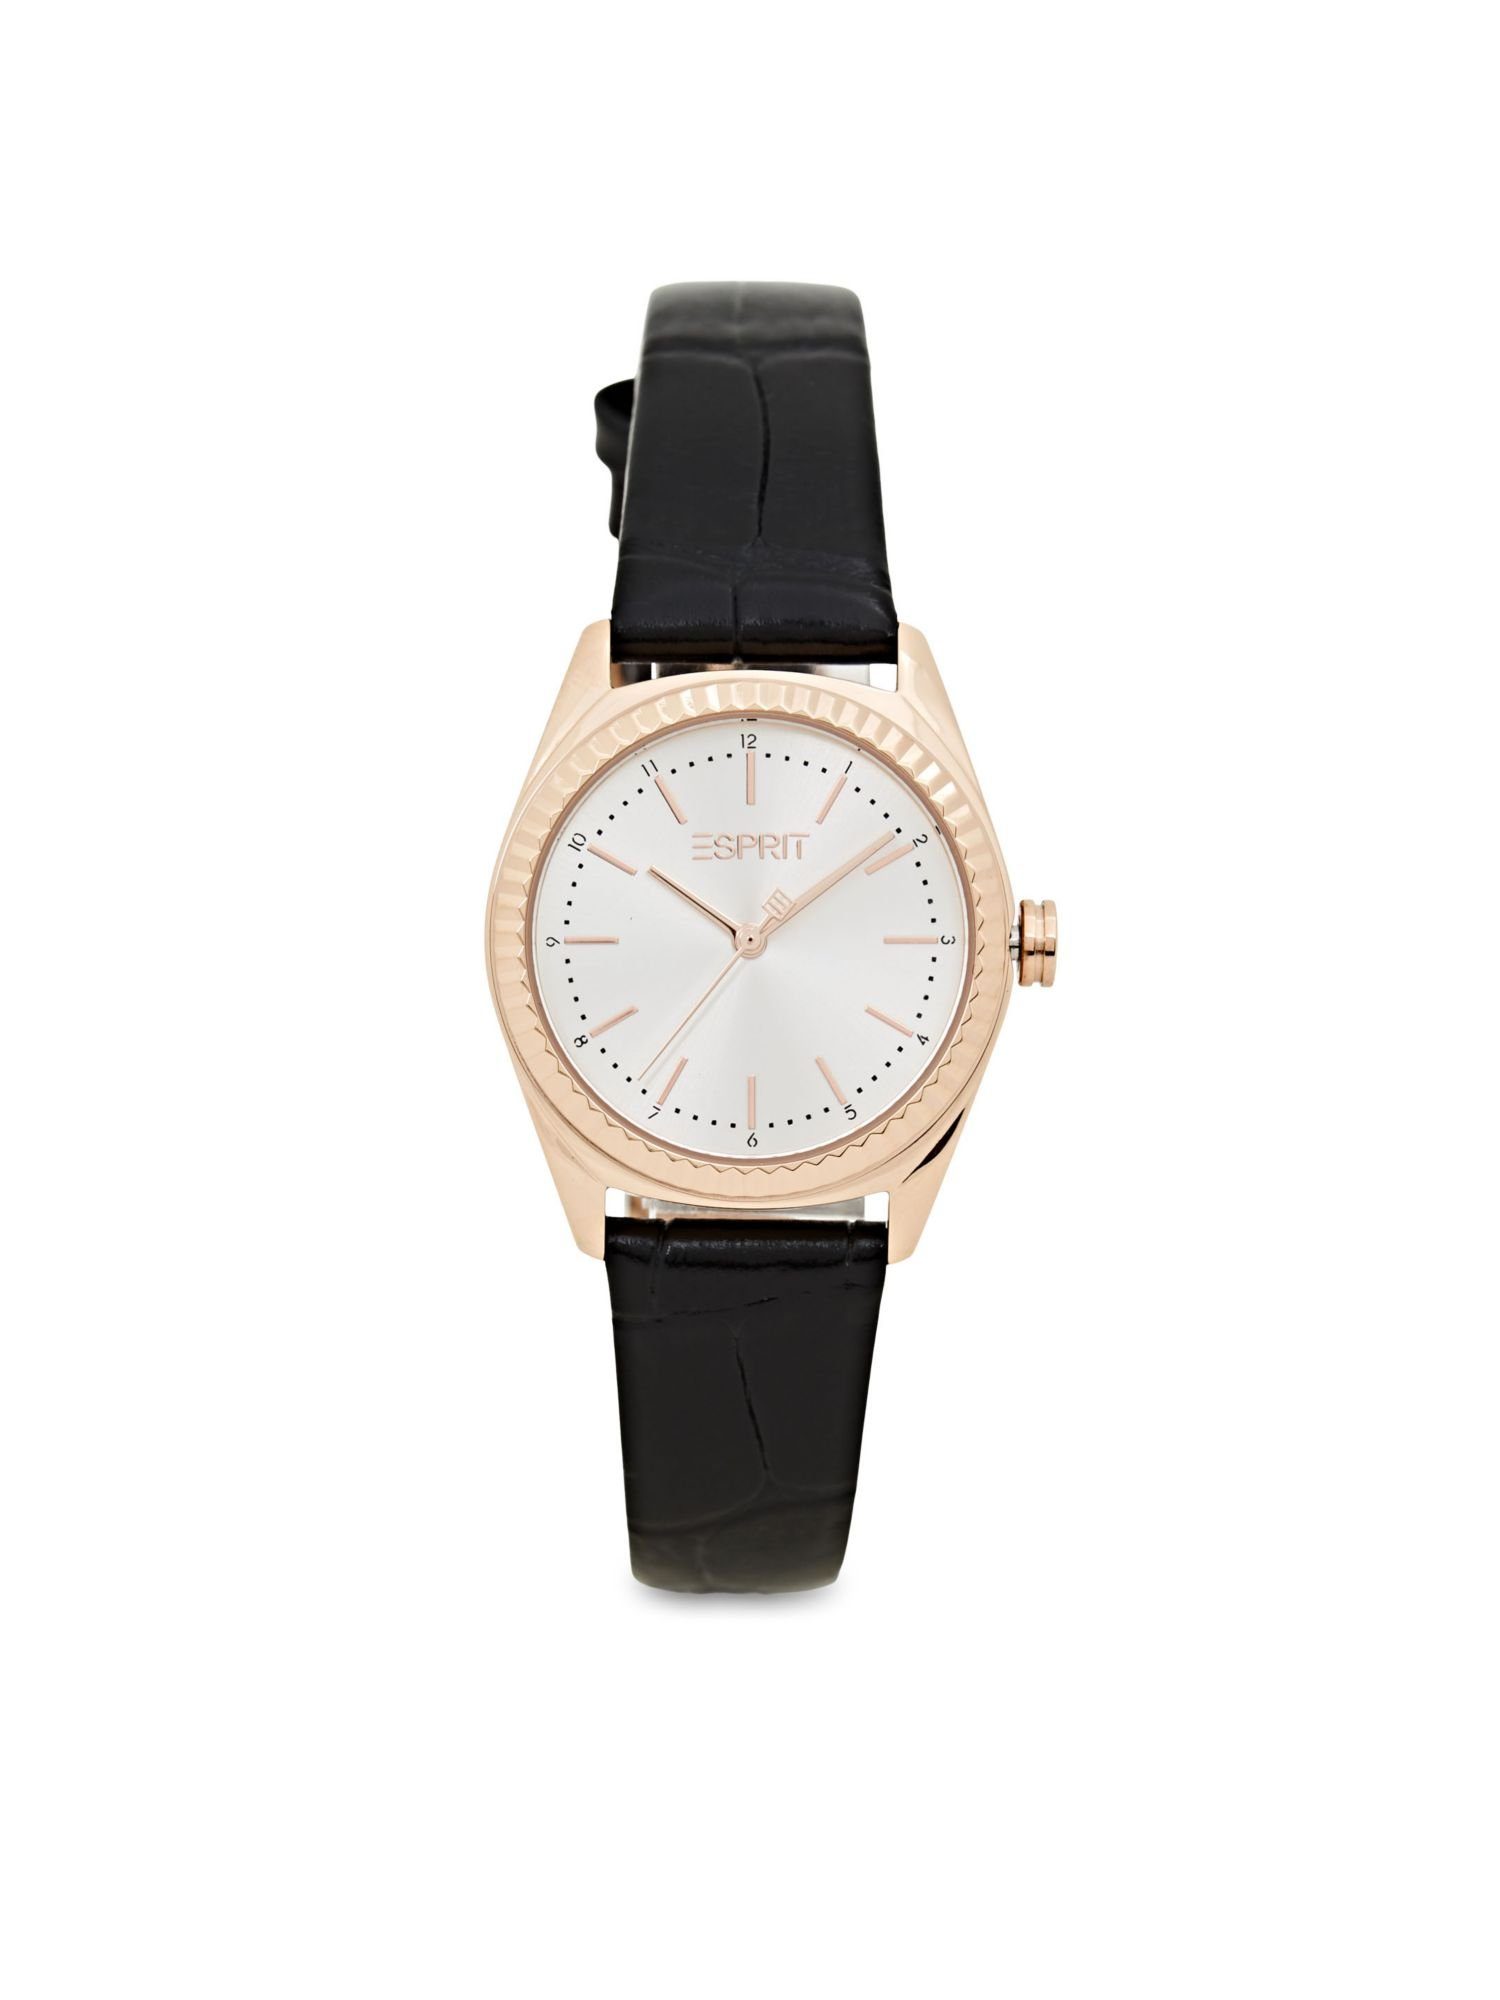 Damen Uhren Esprit Quarzuhr Edelstahl-Uhr mit strukturiertem Lederarmband